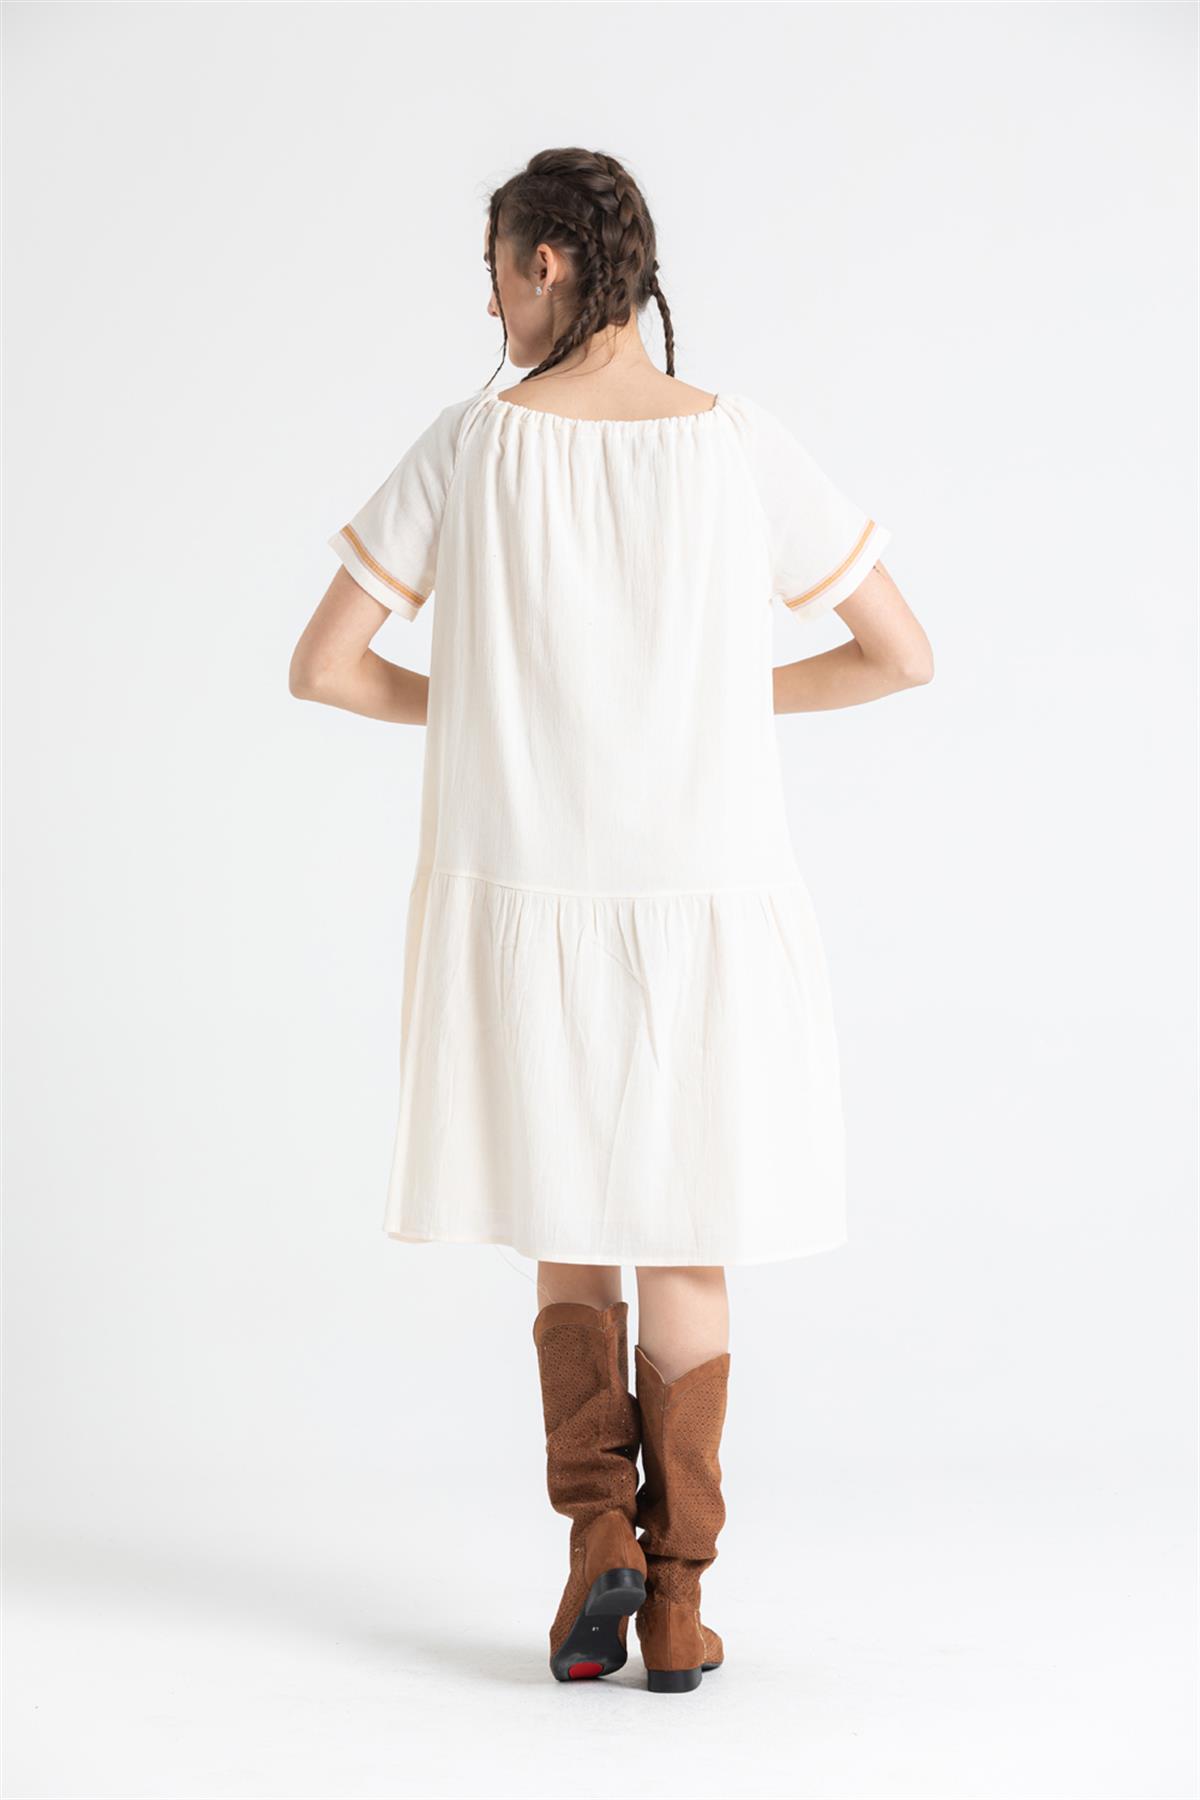 Kurzärmliges Sile-Stoff Besticktes kurzes Kleid mit Quasten am Hals